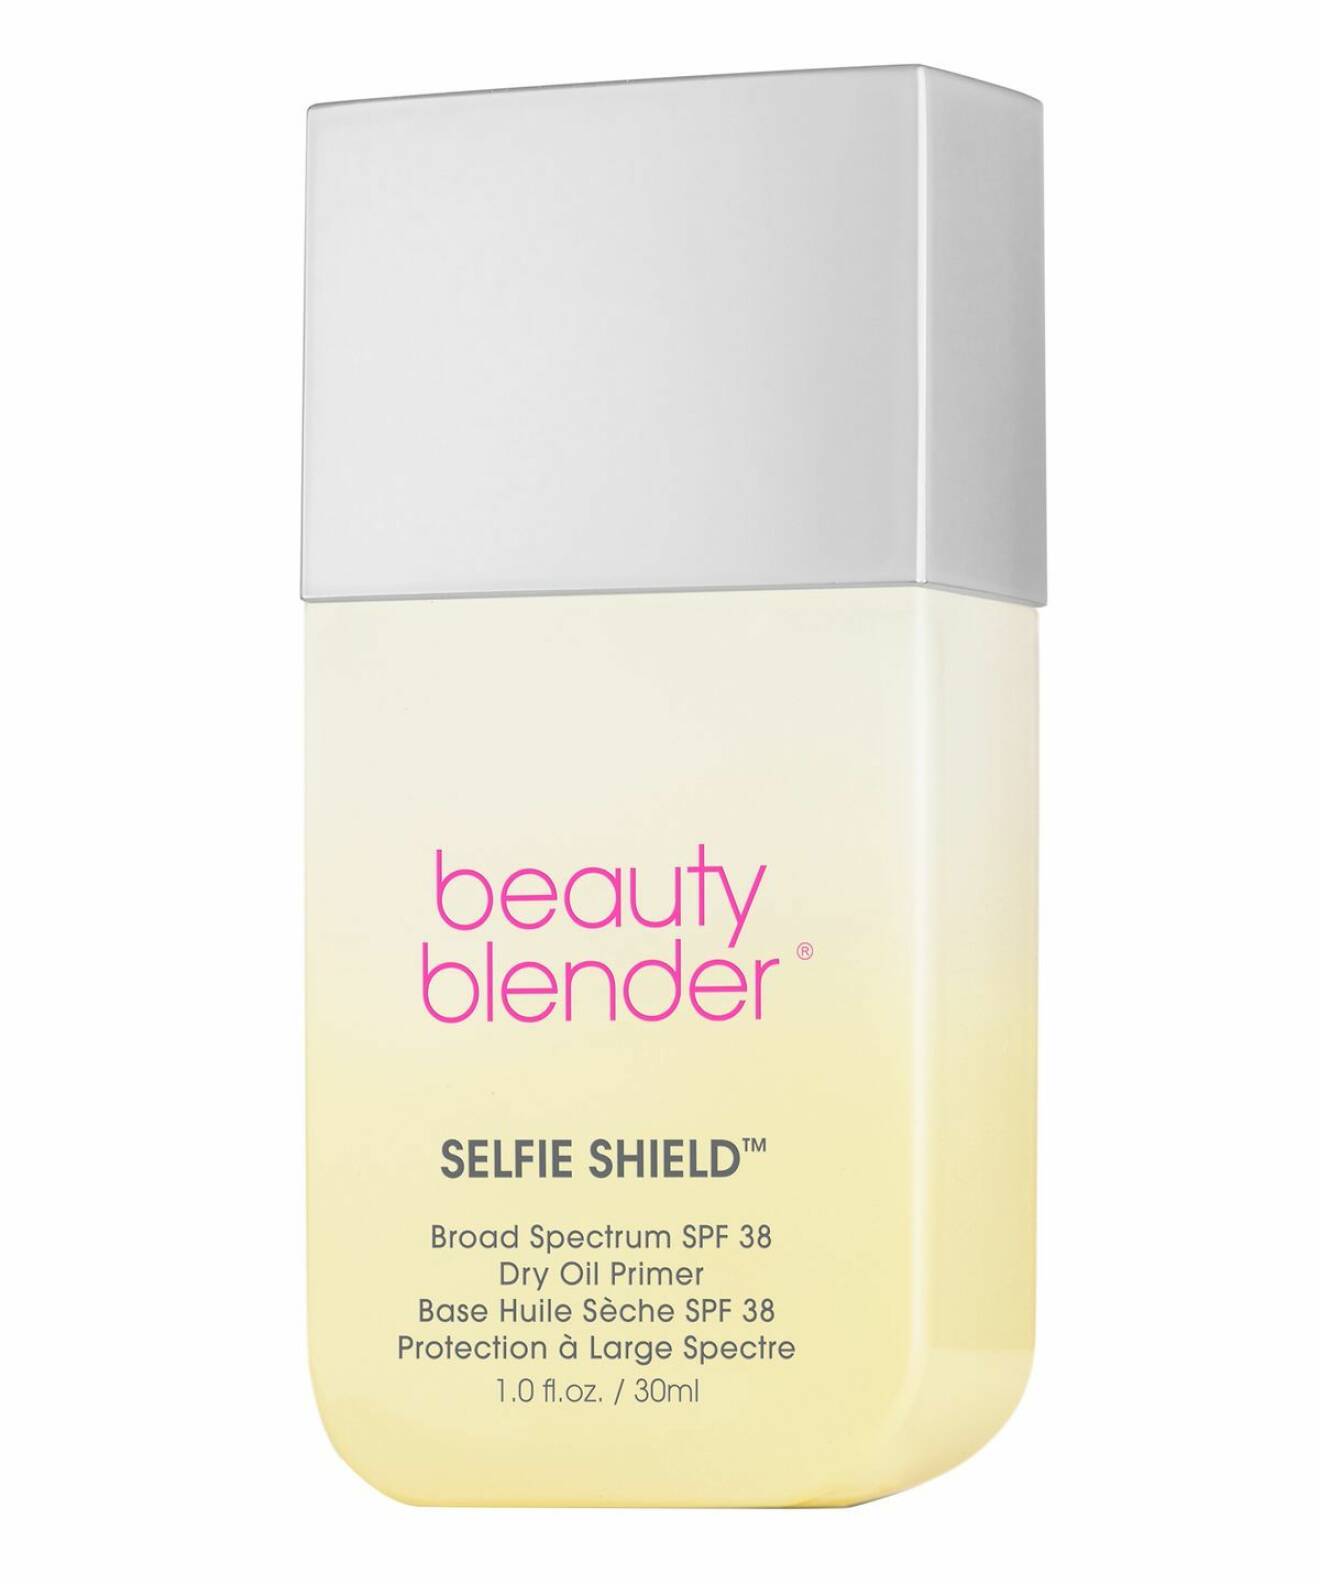 Primer med spf 38, Selfie Shield från Beauty Blender. 